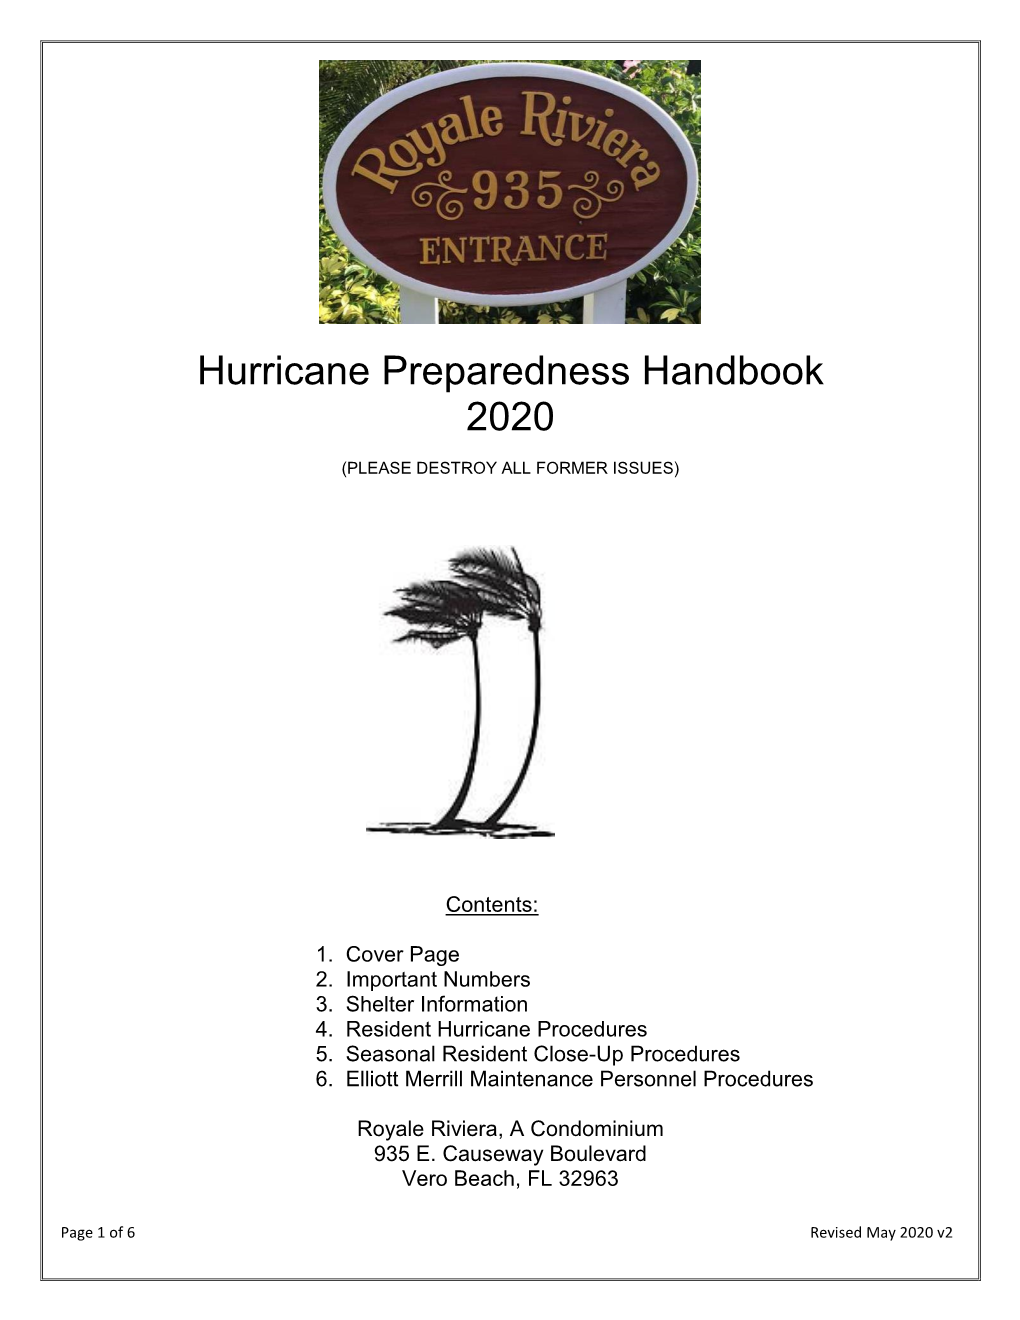 Hurricane Preparedness Handbook 2020